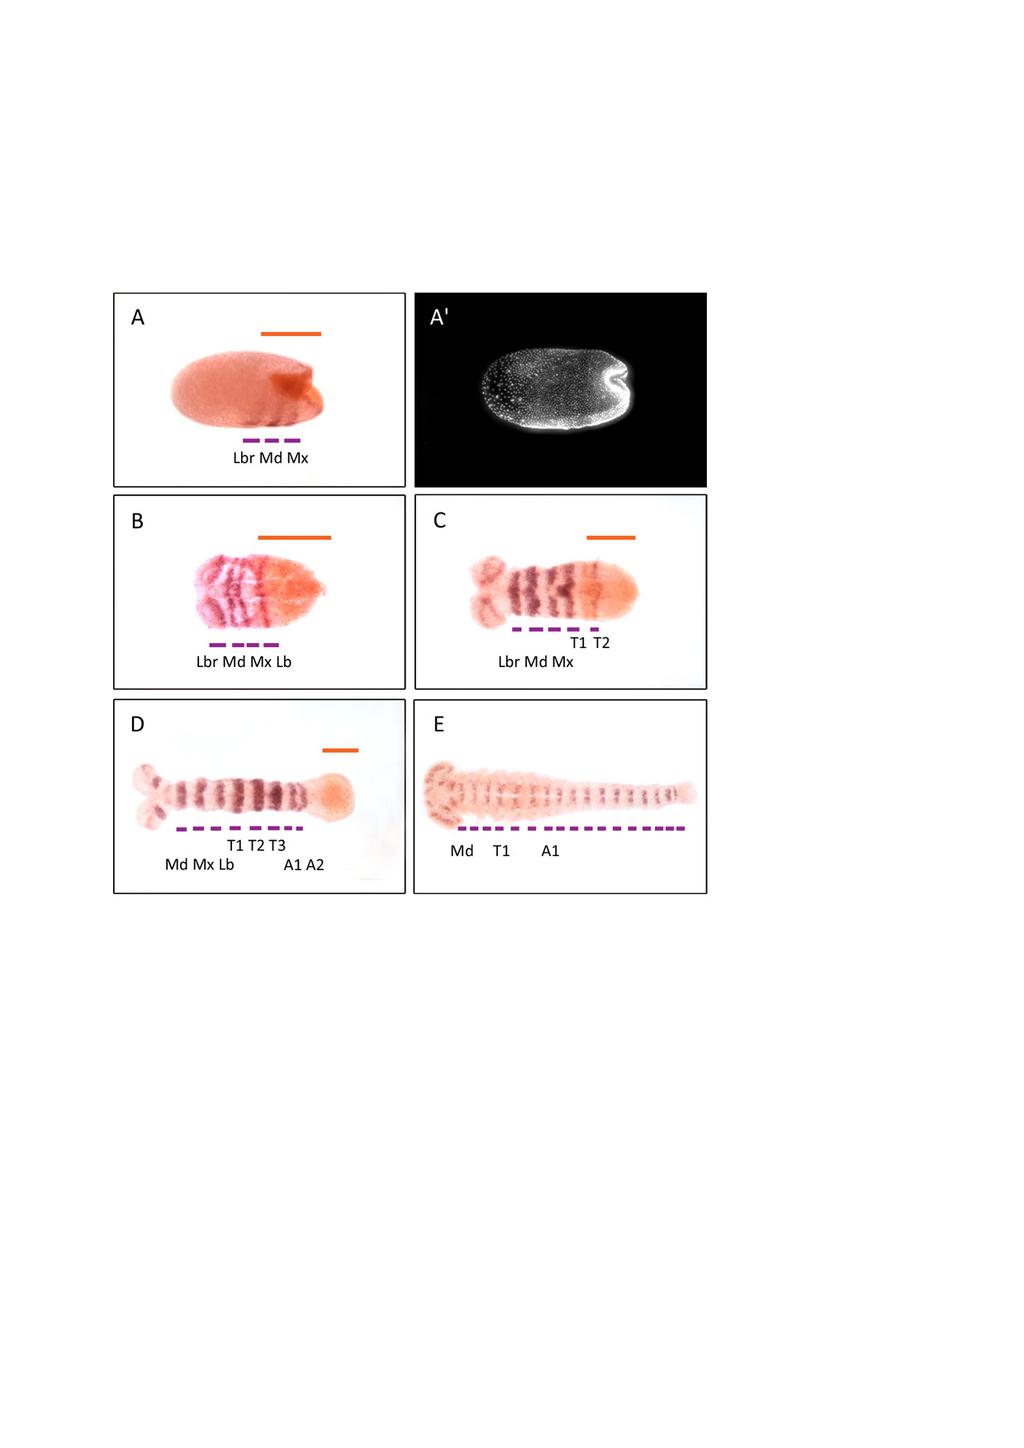 III. Kapitel: mlpt und svb in Tribolium - Ergebnisse Abb. 36: Doppel-ISH von T.c. gooseberry und T.c. svb Dargestellt ist eine Doppelfärbung der Expressionen von gooseberry (lila) und shavenbaby (orange).